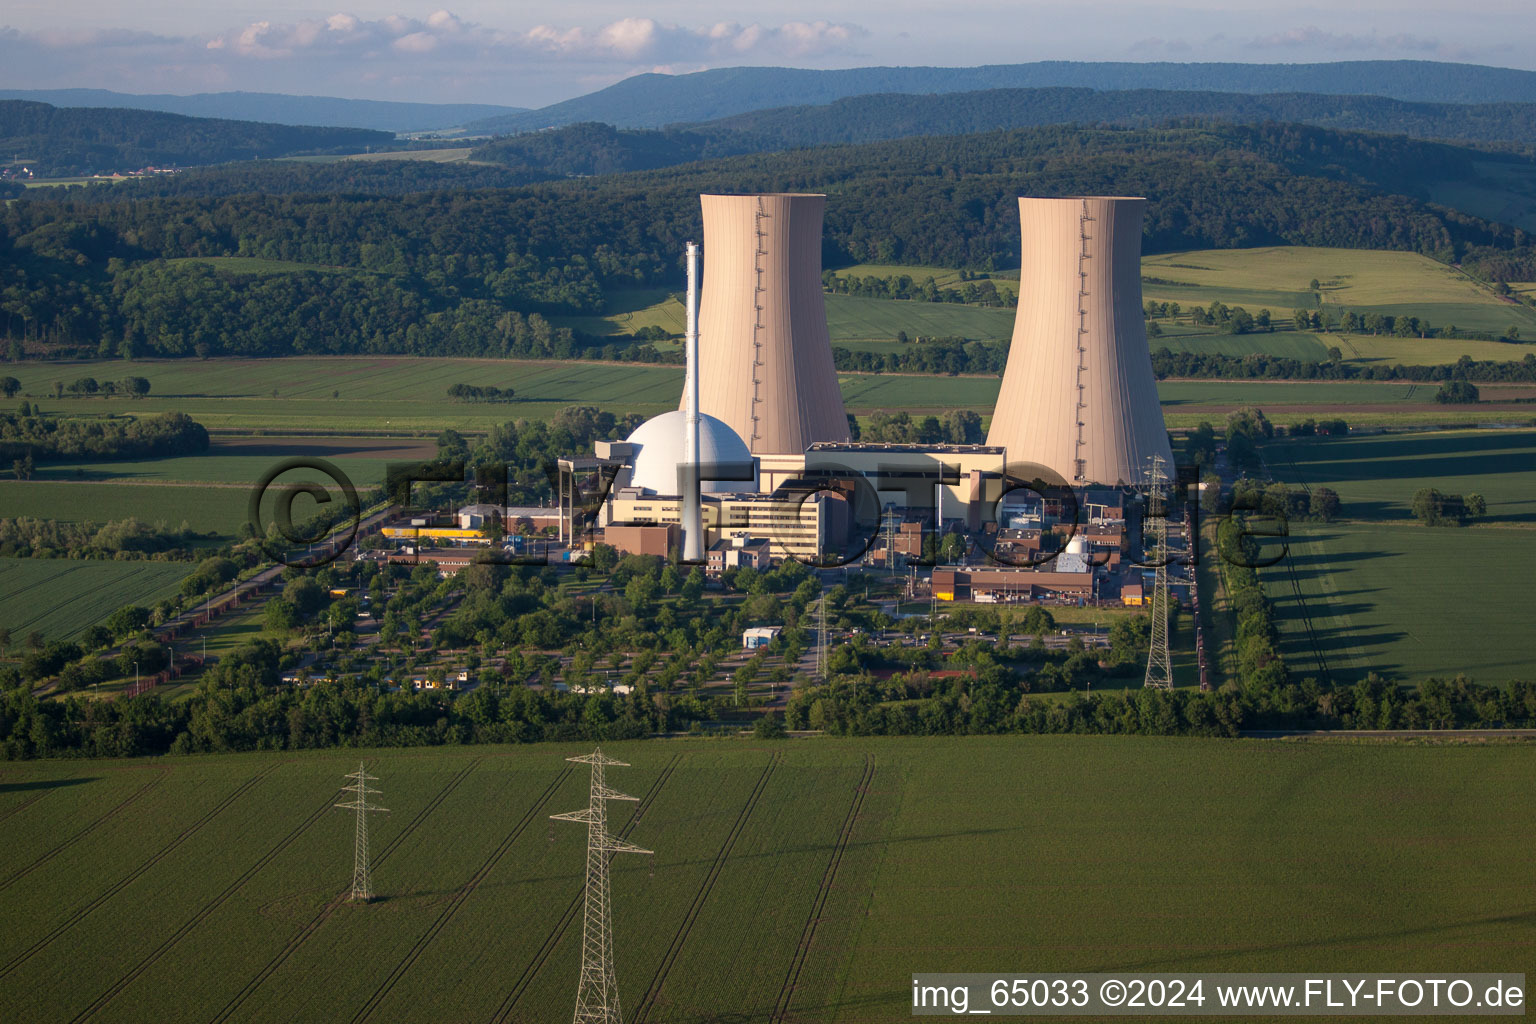 Blocs réacteurs, structures et systèmes de tour de refroidissement de la centrale nucléaire - centrale nucléaire - centrale nucléaire Grohnde sur la Weser à Emmerthal à Grohnde dans le département Basse-Saxe, Allemagne d'en haut